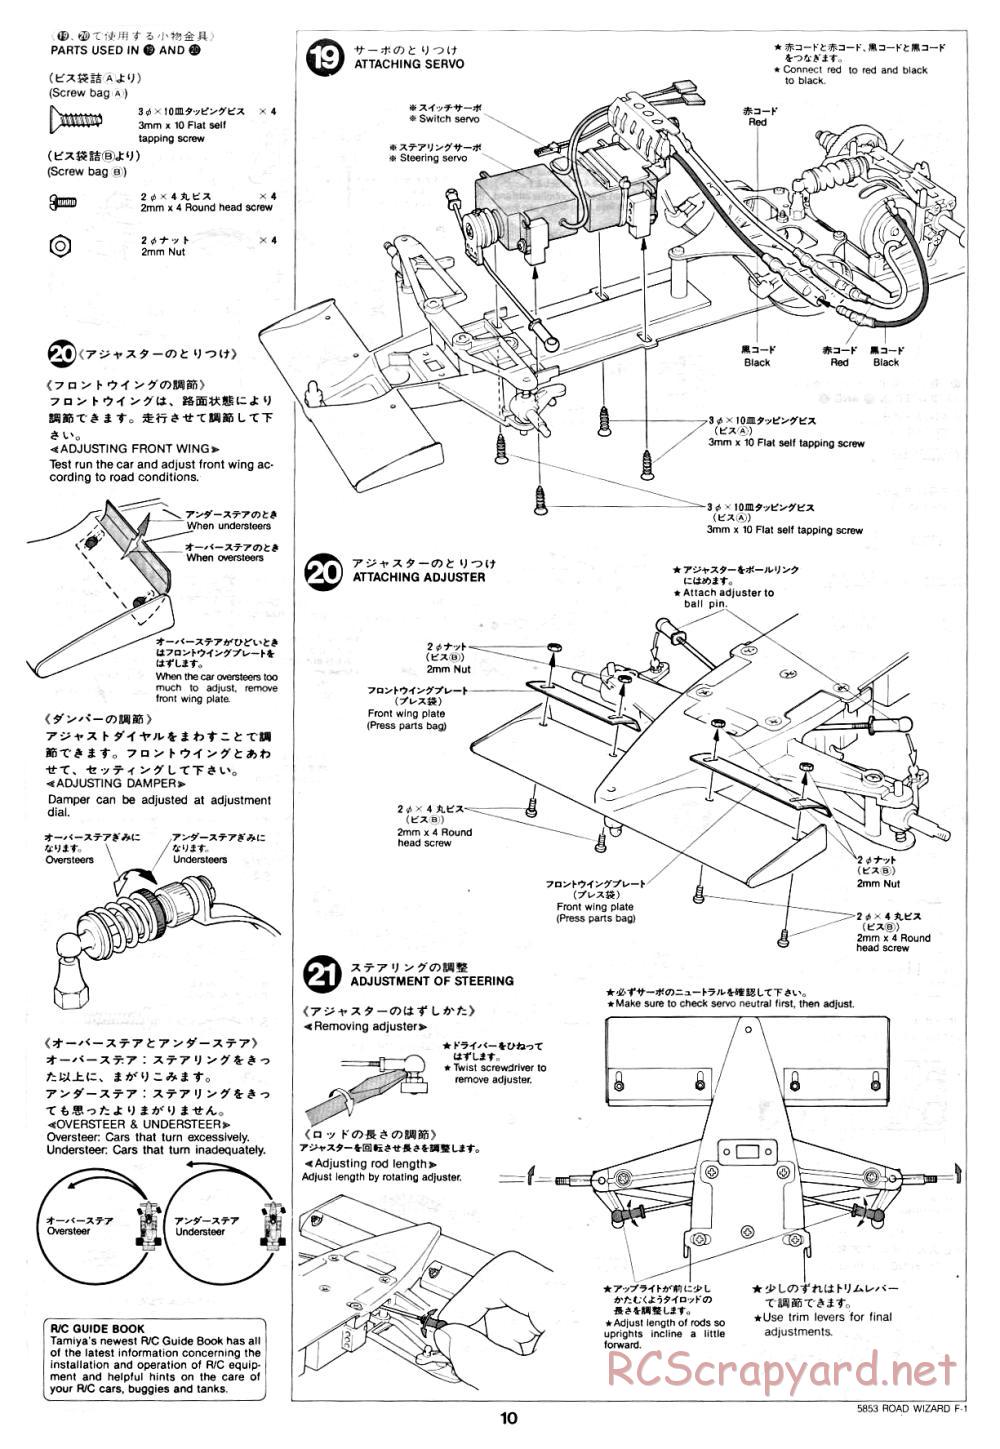 Tamiya - Road Wizard F-1 - 58053 - Manual - Page 10